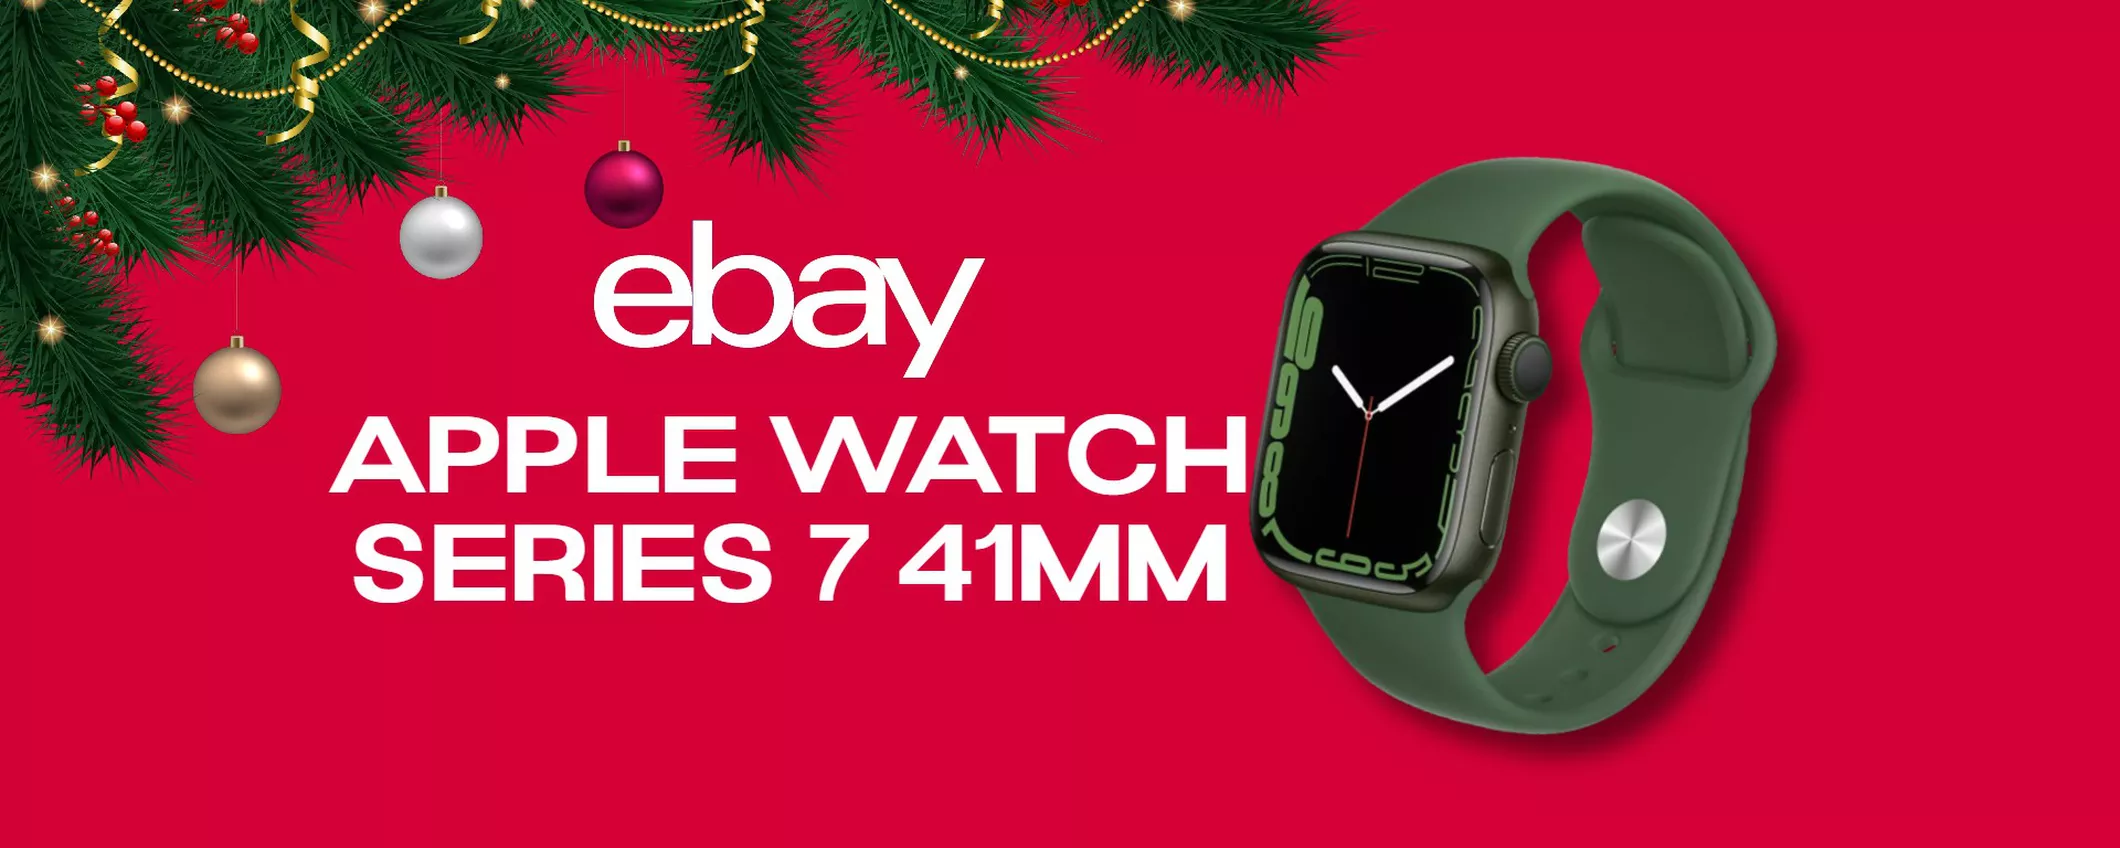 Apple Watch Series 7: RISPARMIA SUBITO 50 euro con il codice eBay!